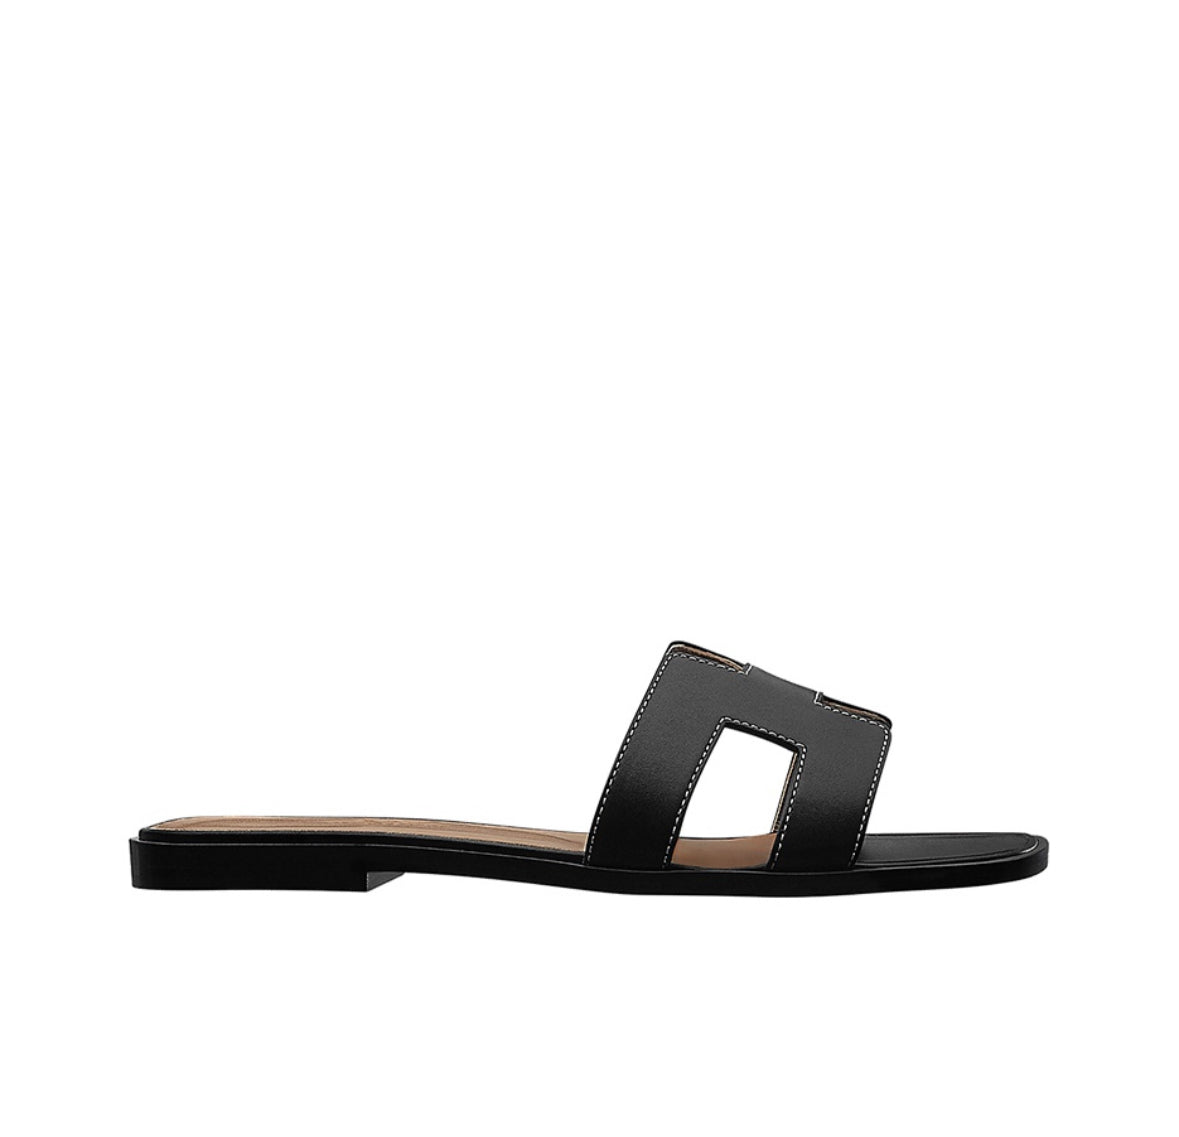 Hermes Oran Sandals “Black/Brown”